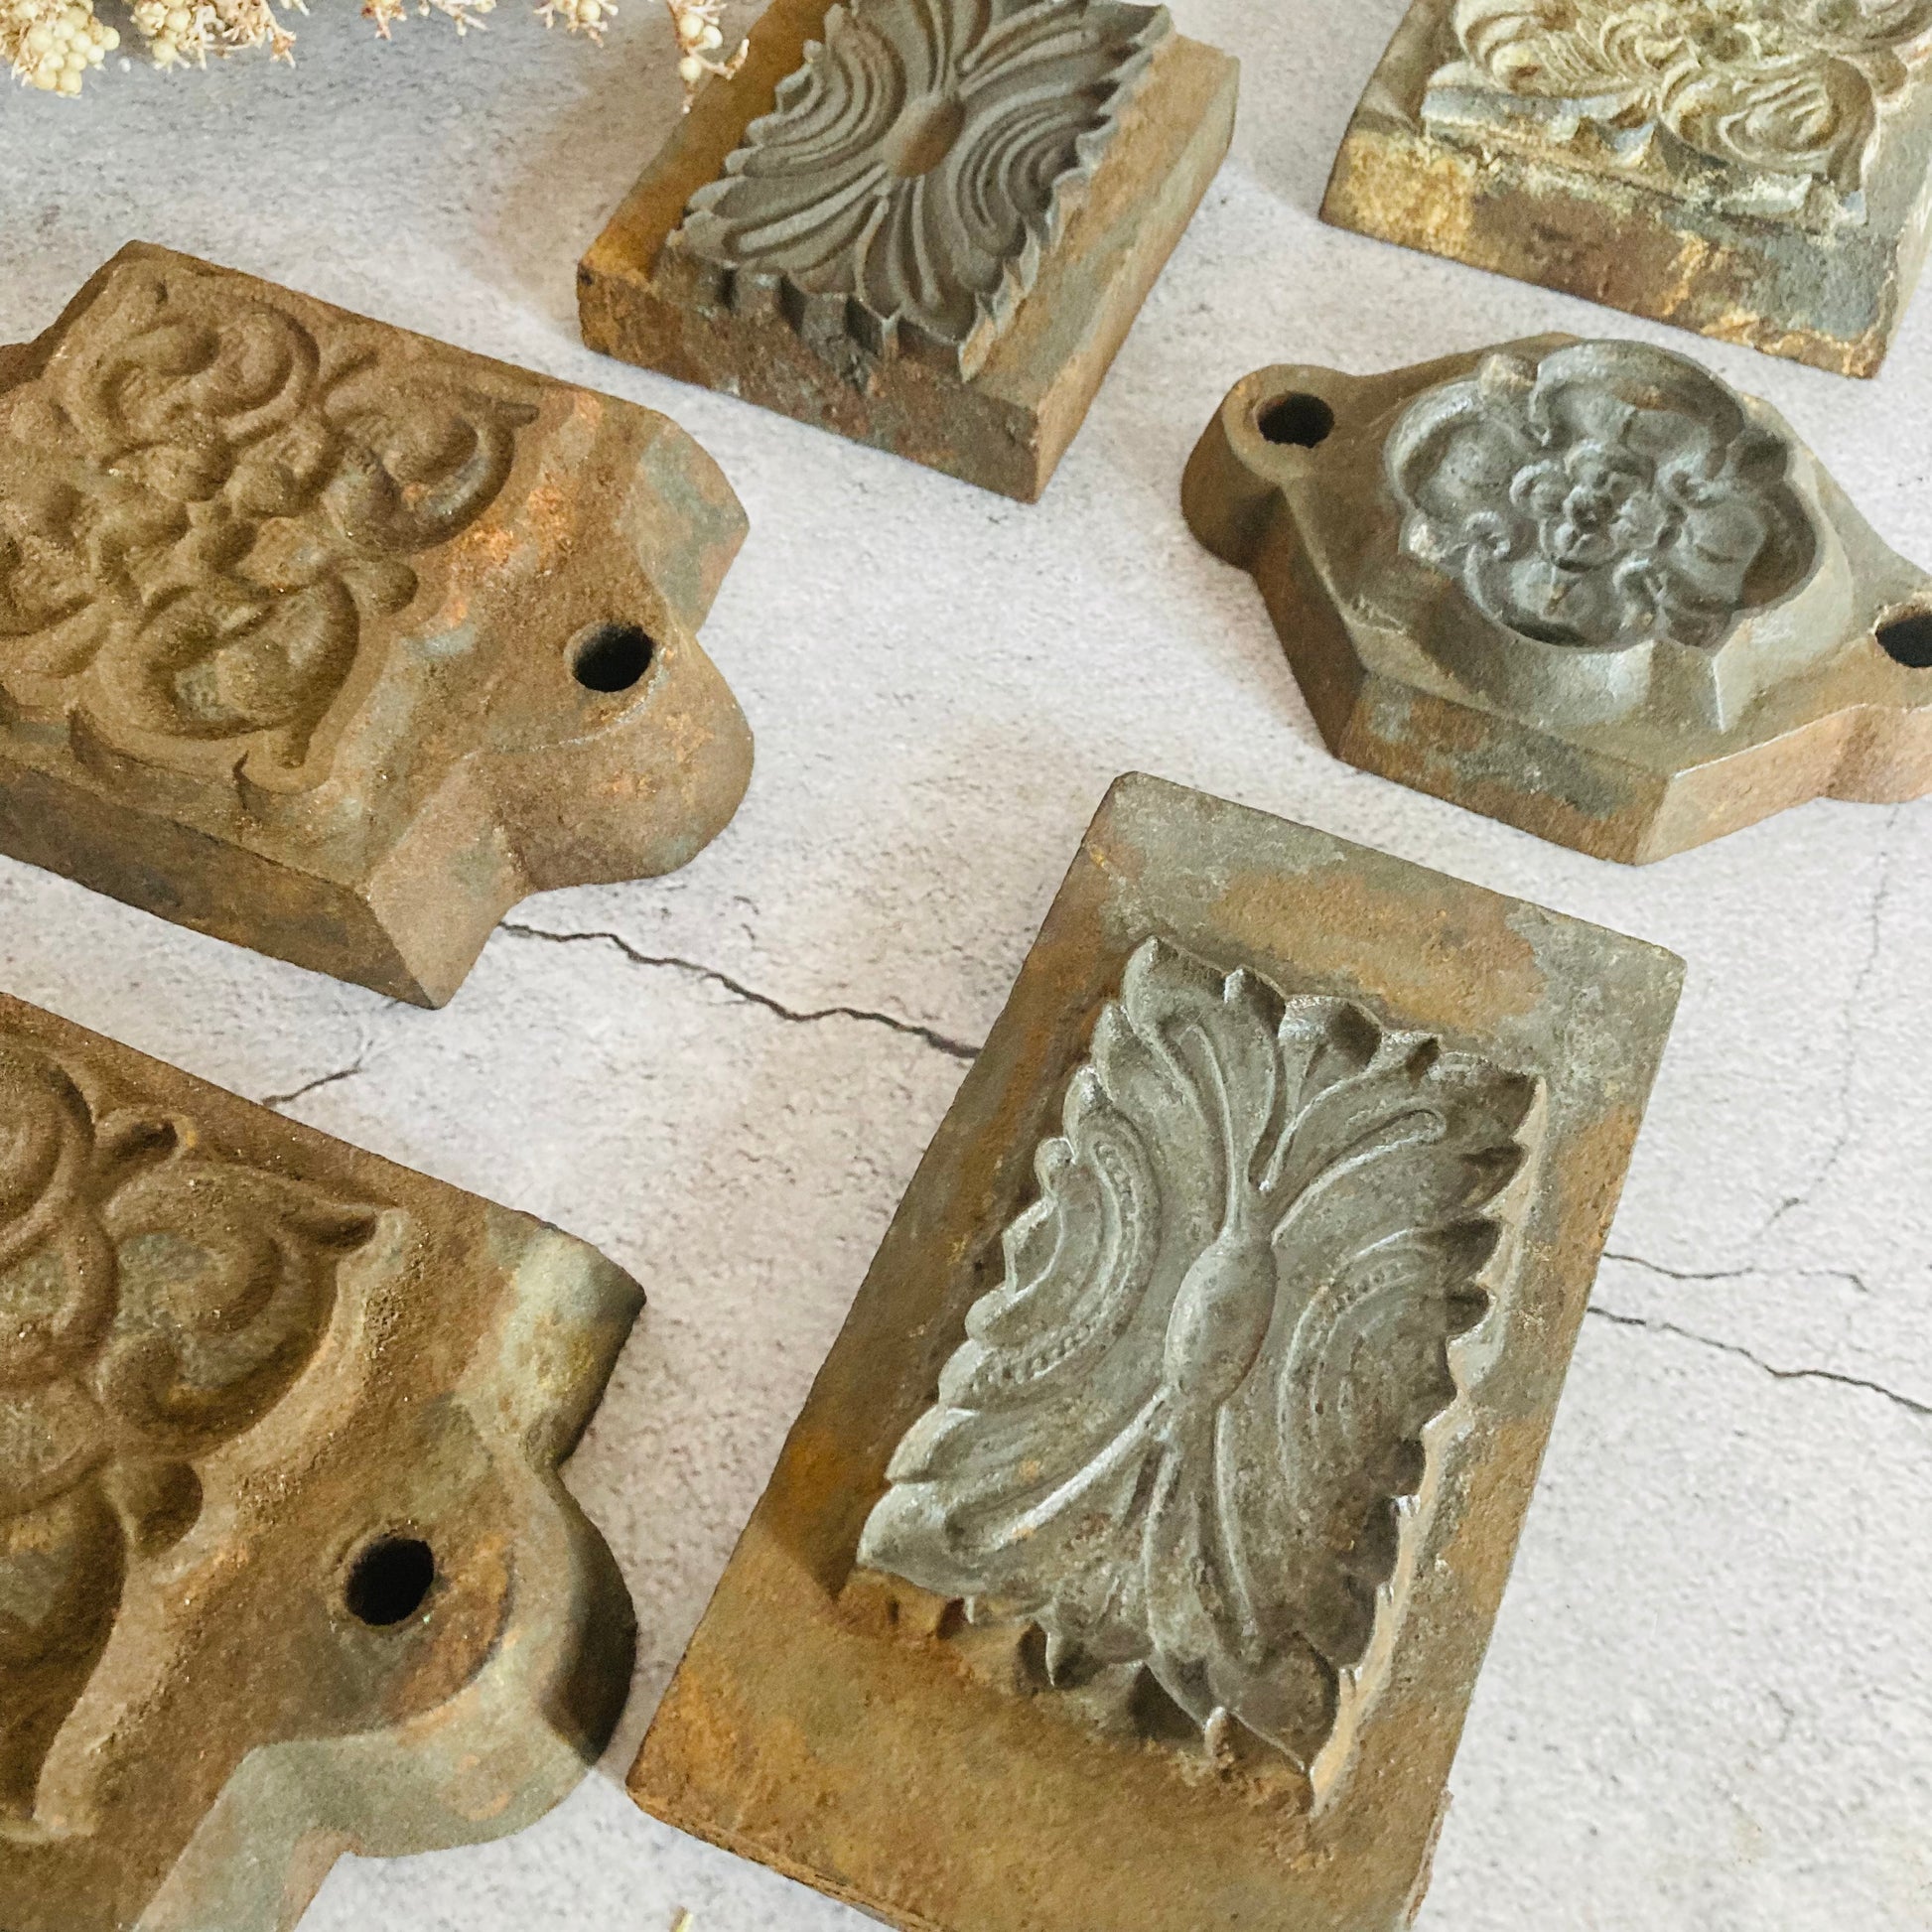 Antique Architectural Moulds Unique Decorative Salvage